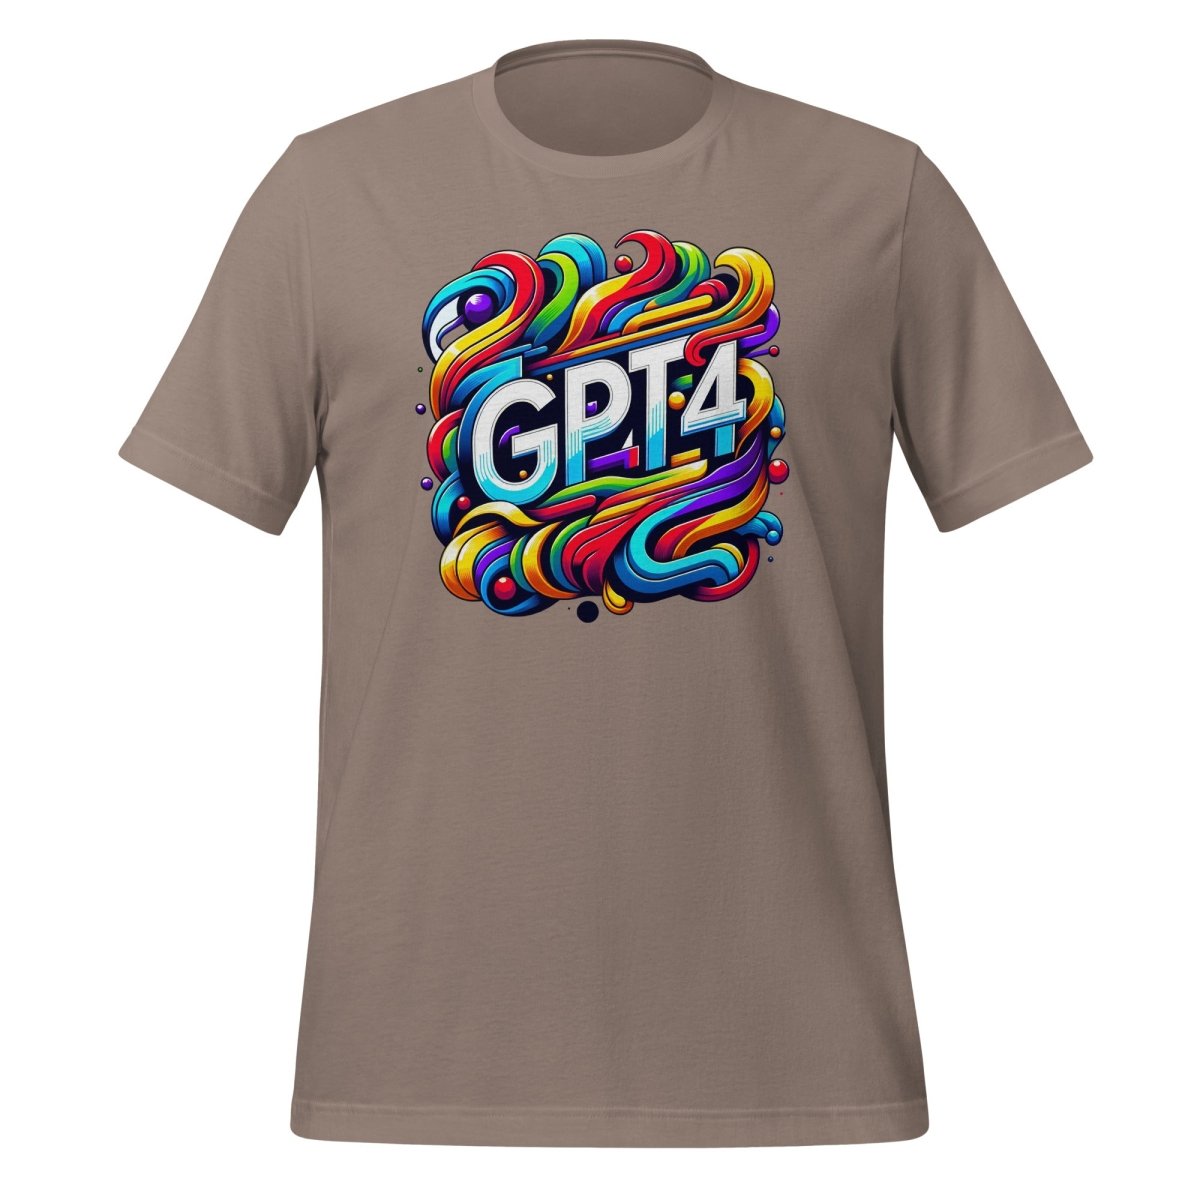 GPT - 4 DALL - E Design T - Shirt (unisex) - Pebble - AI Store